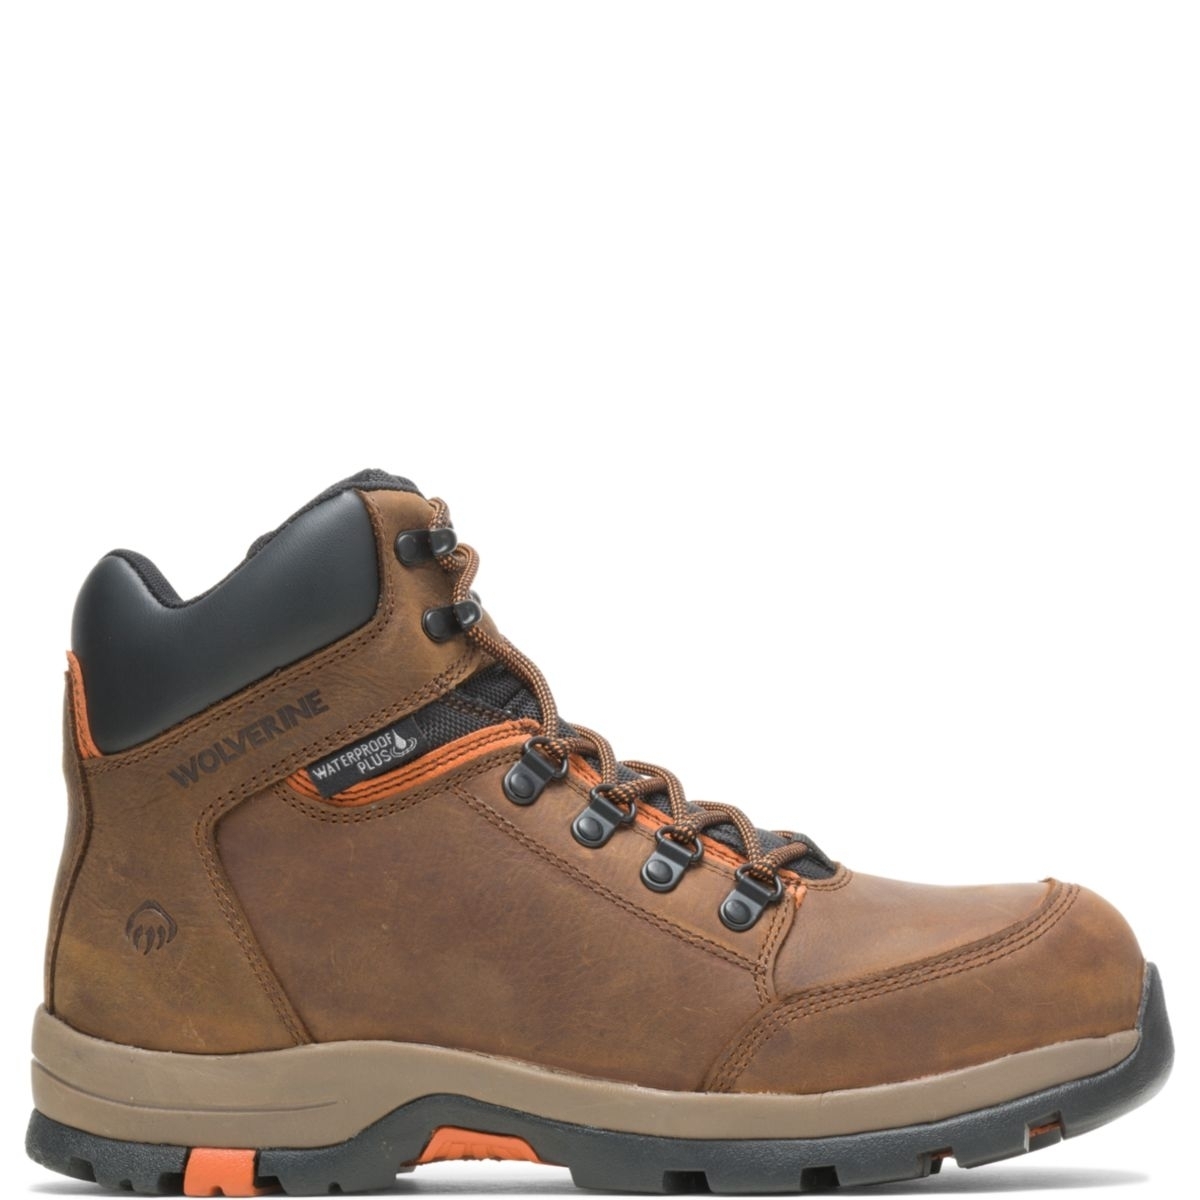 WOLVERINE Men's Grayson Steel Toe Waterproof Work Boot Brown - W211043 BROWN - BROWN, 10 X-Wide